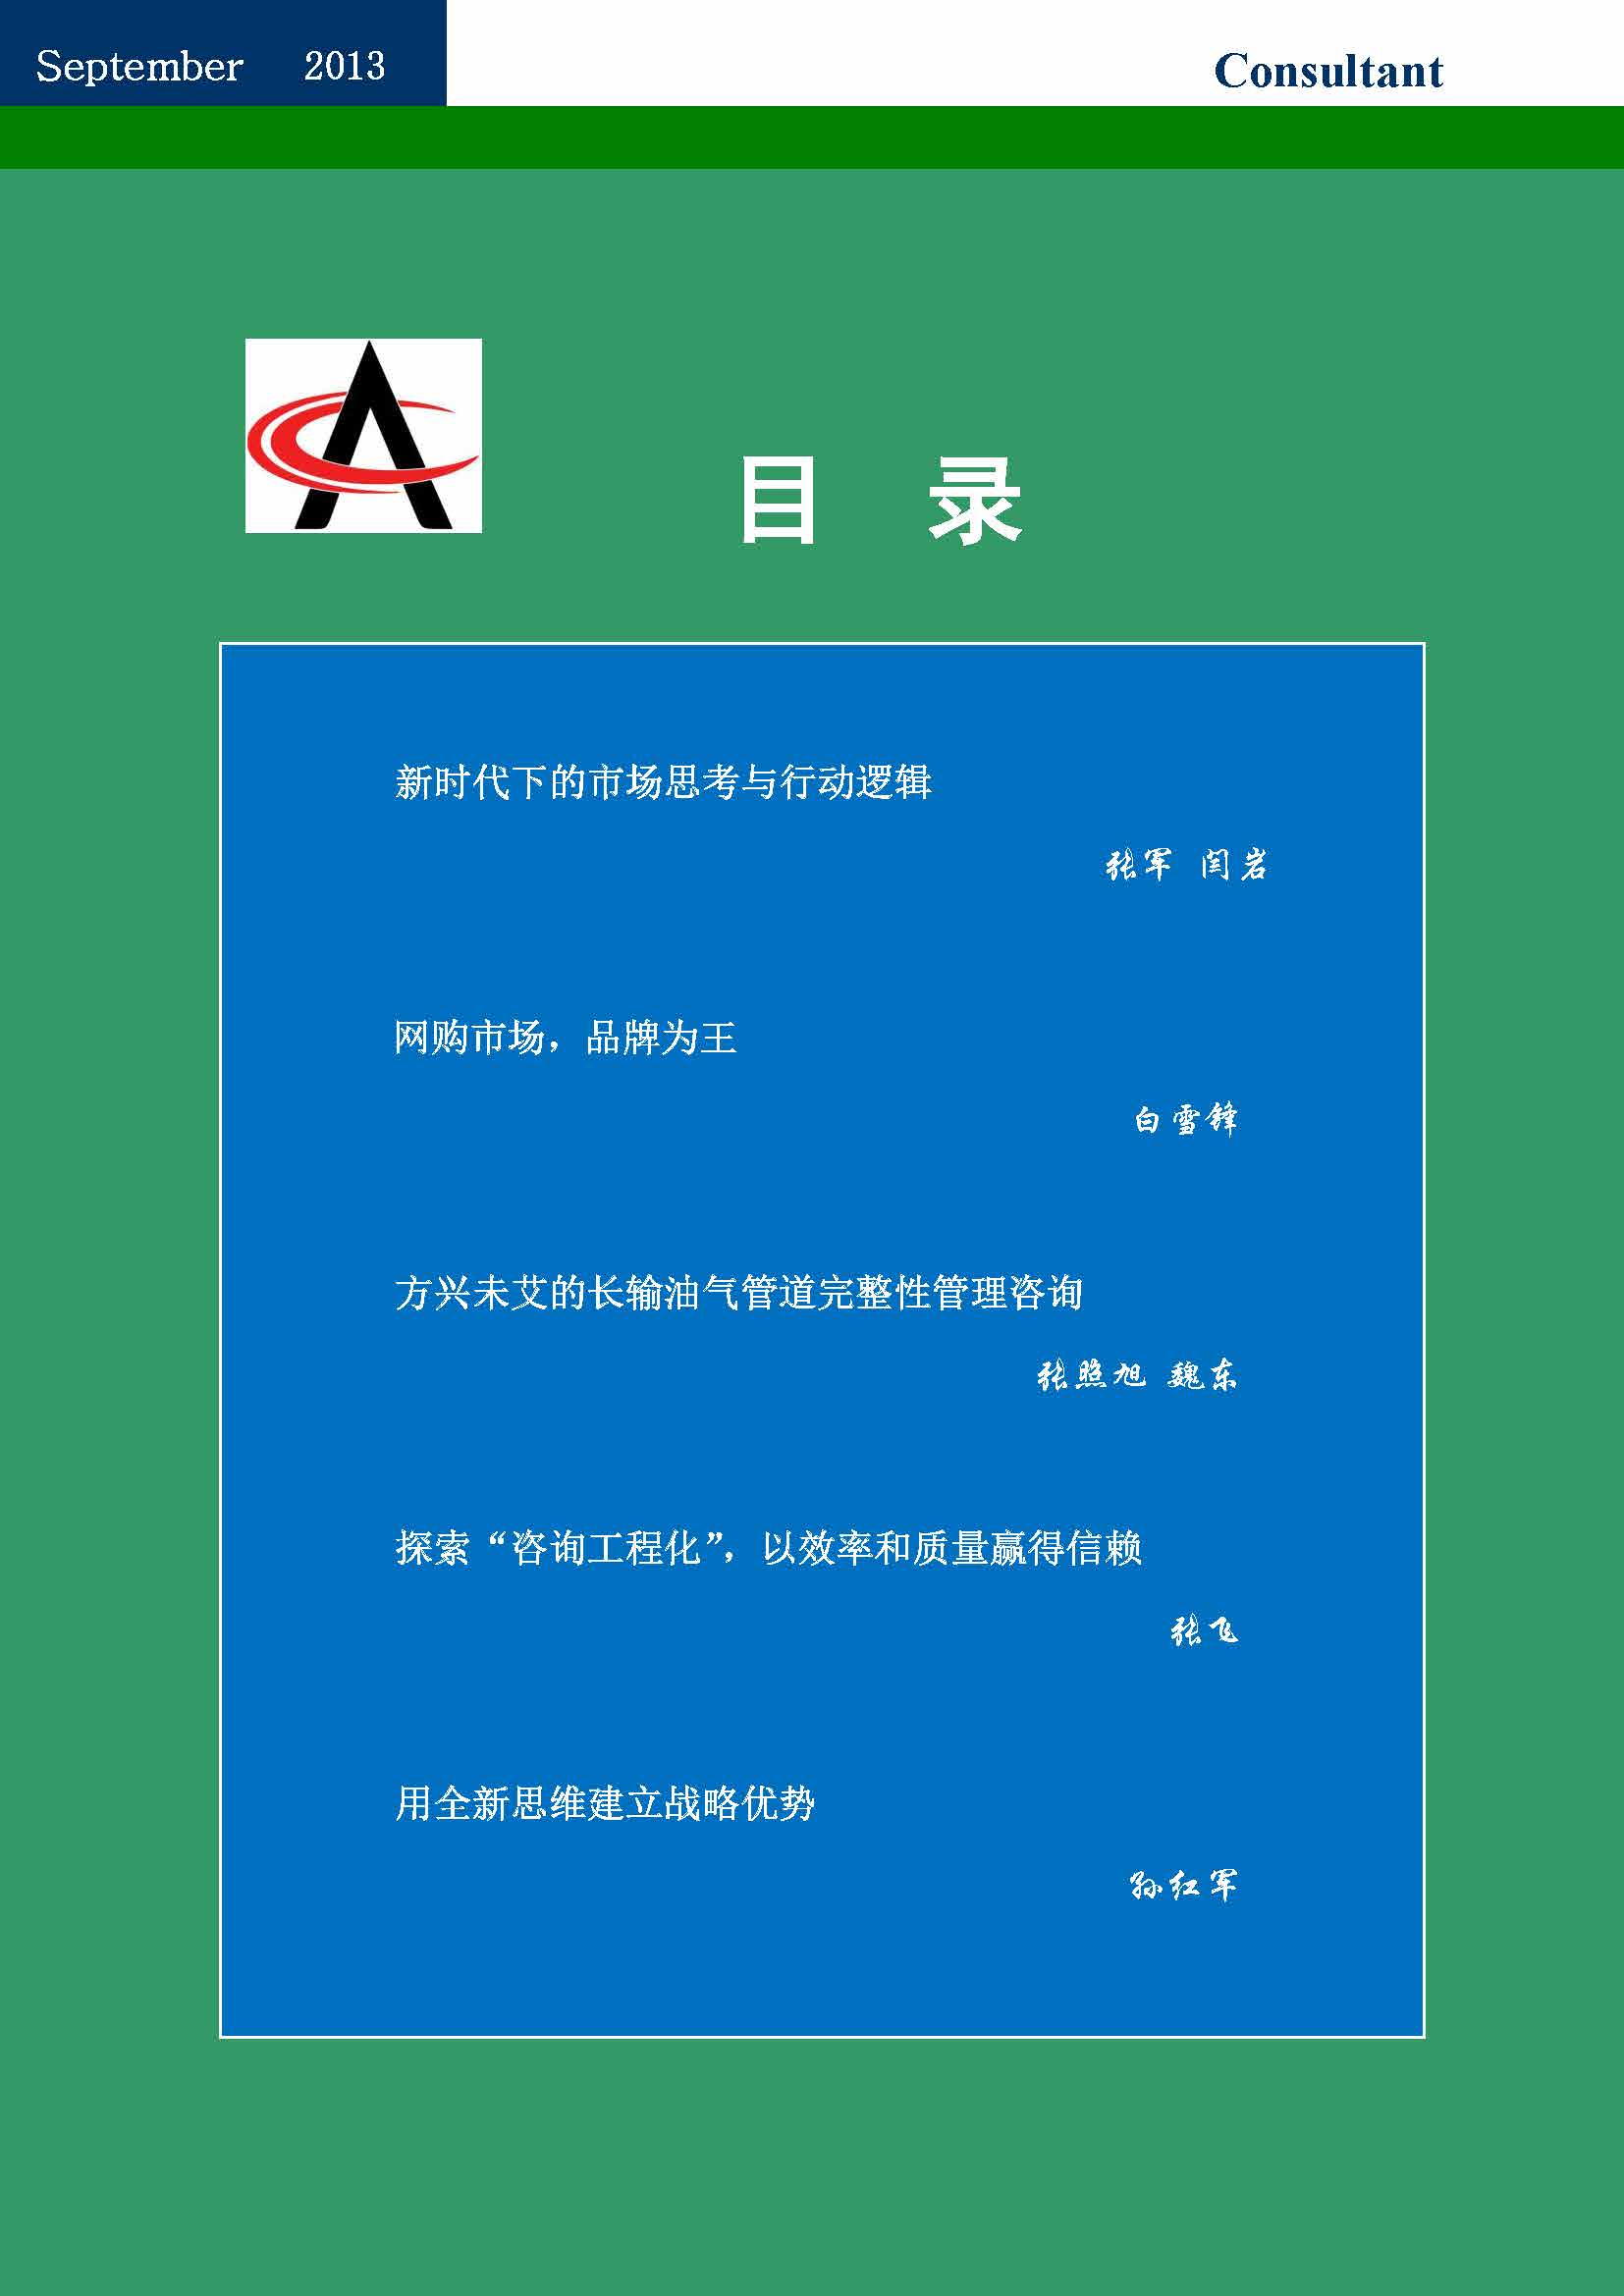 30中国科技咨询协会会刊（第三十期）_页面_03.jpg